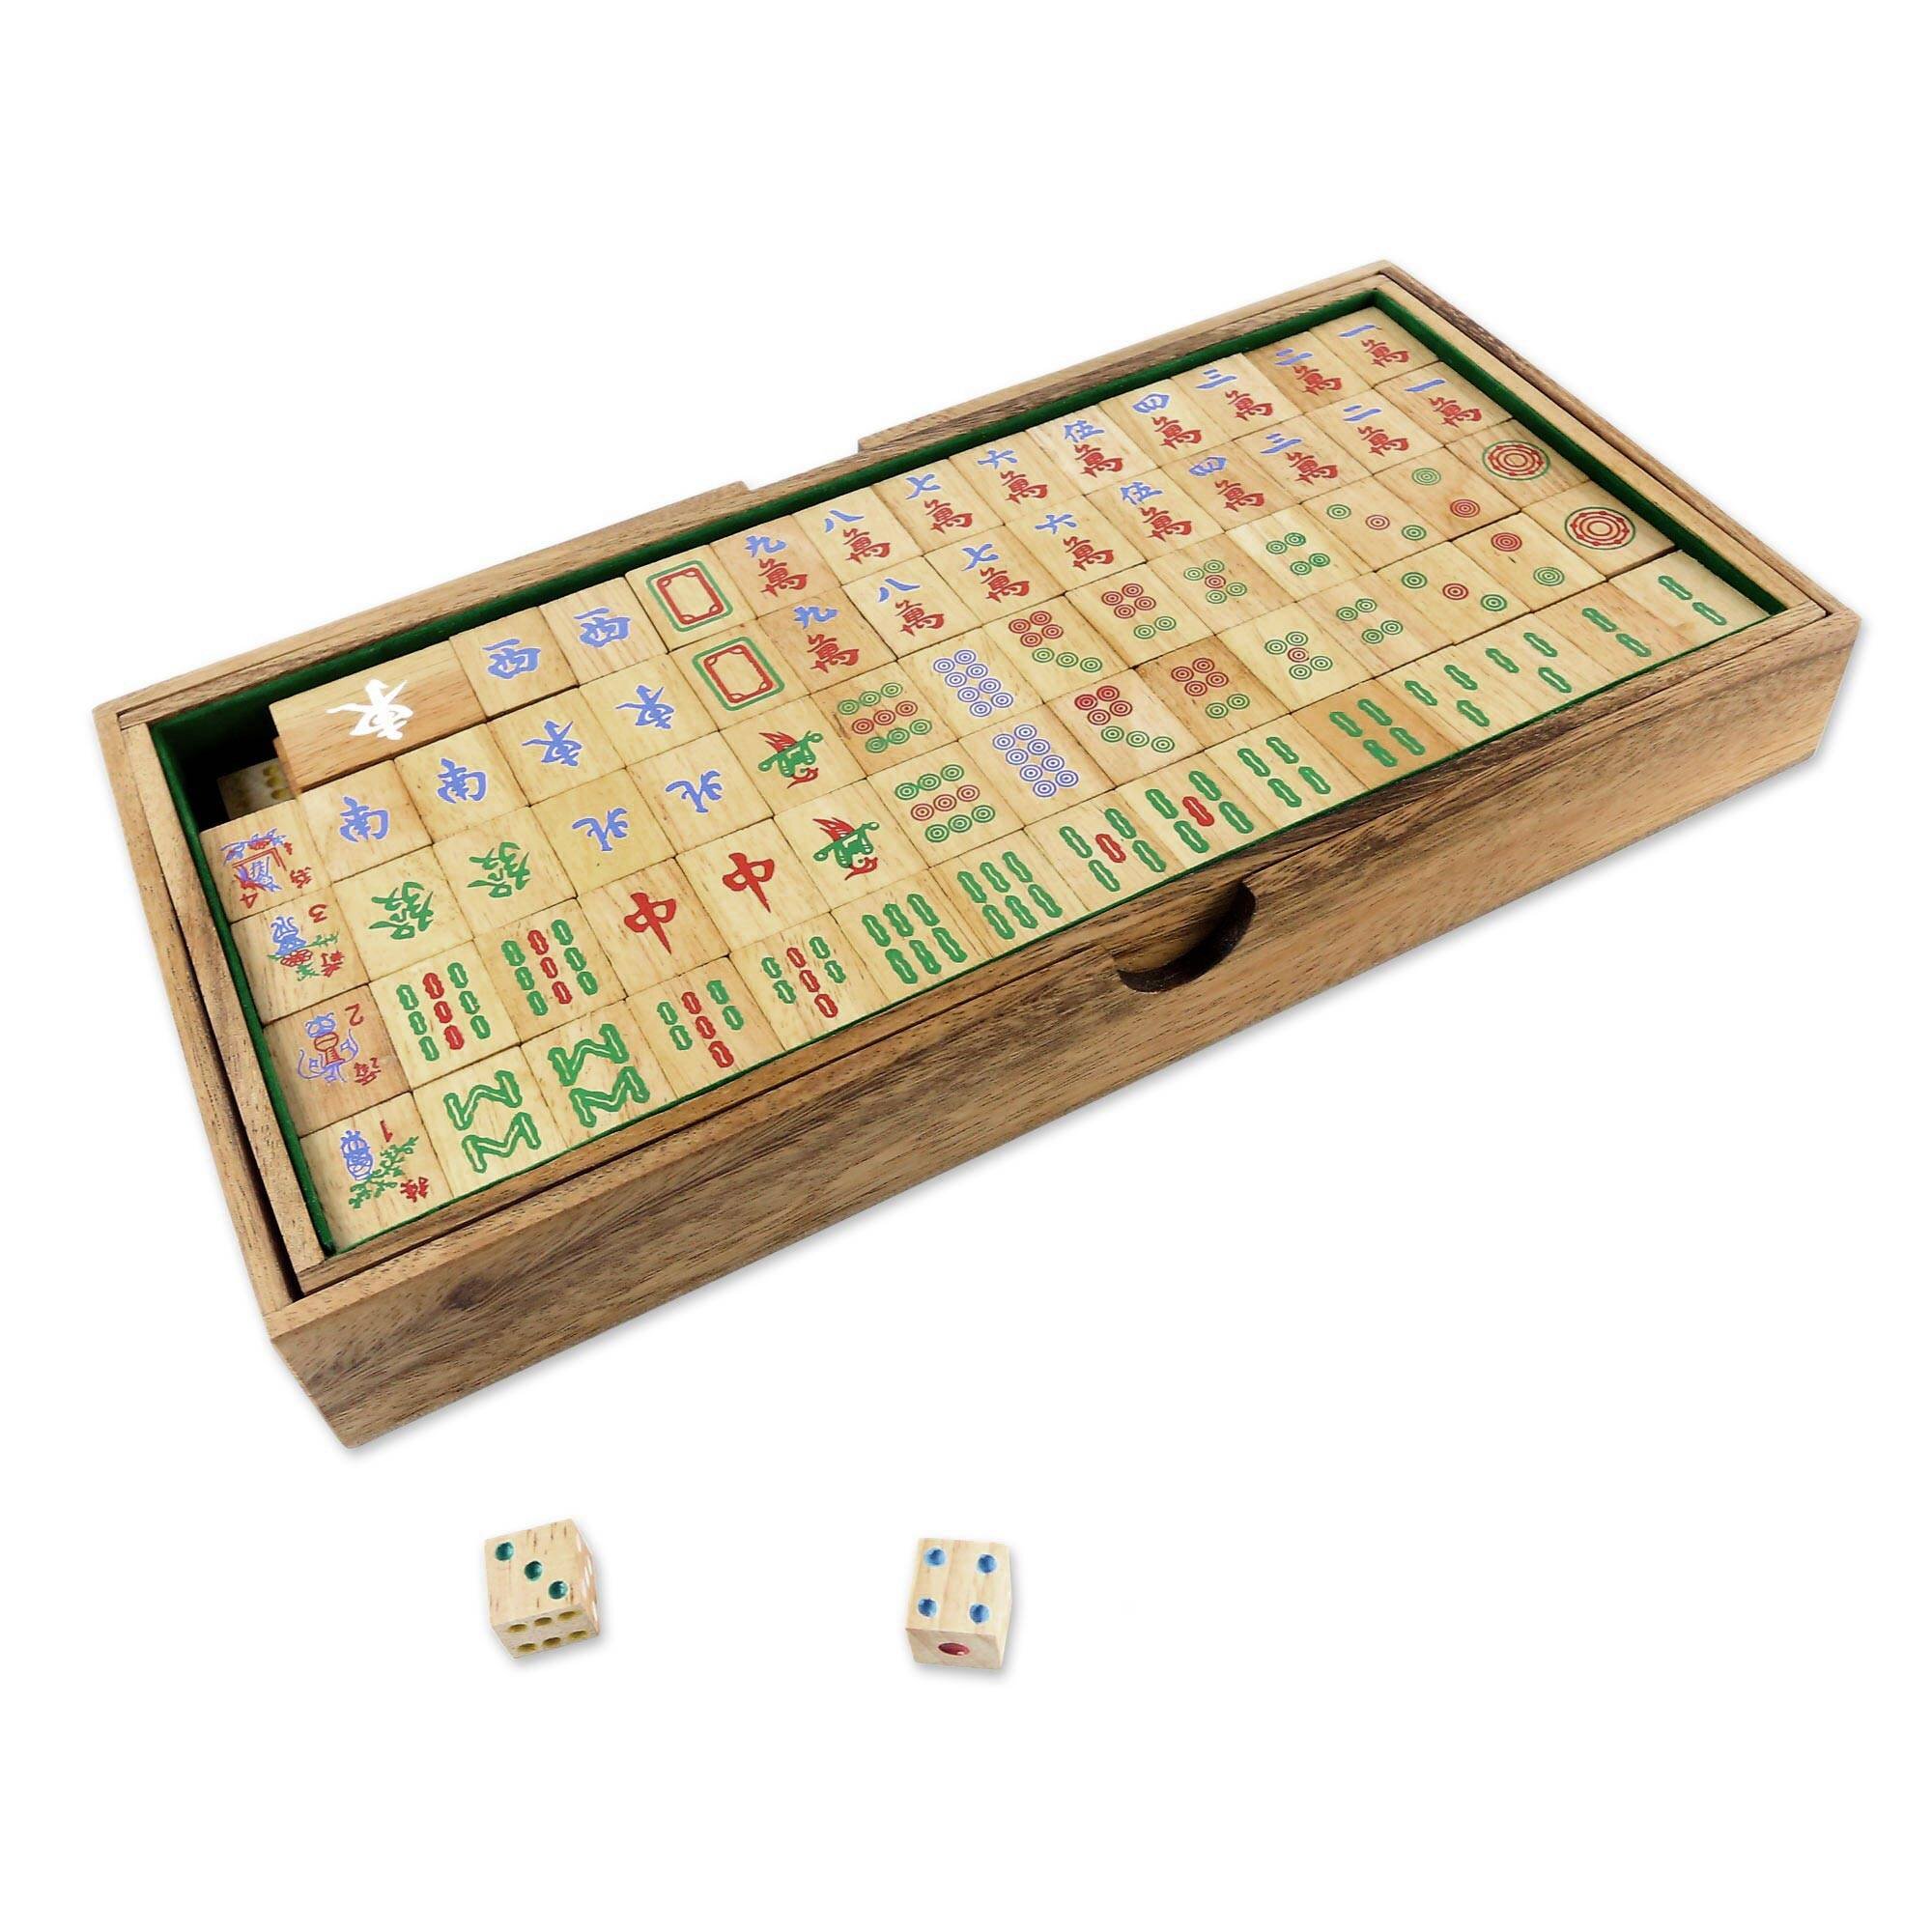 Mahjong Chain - Free Play & No Download